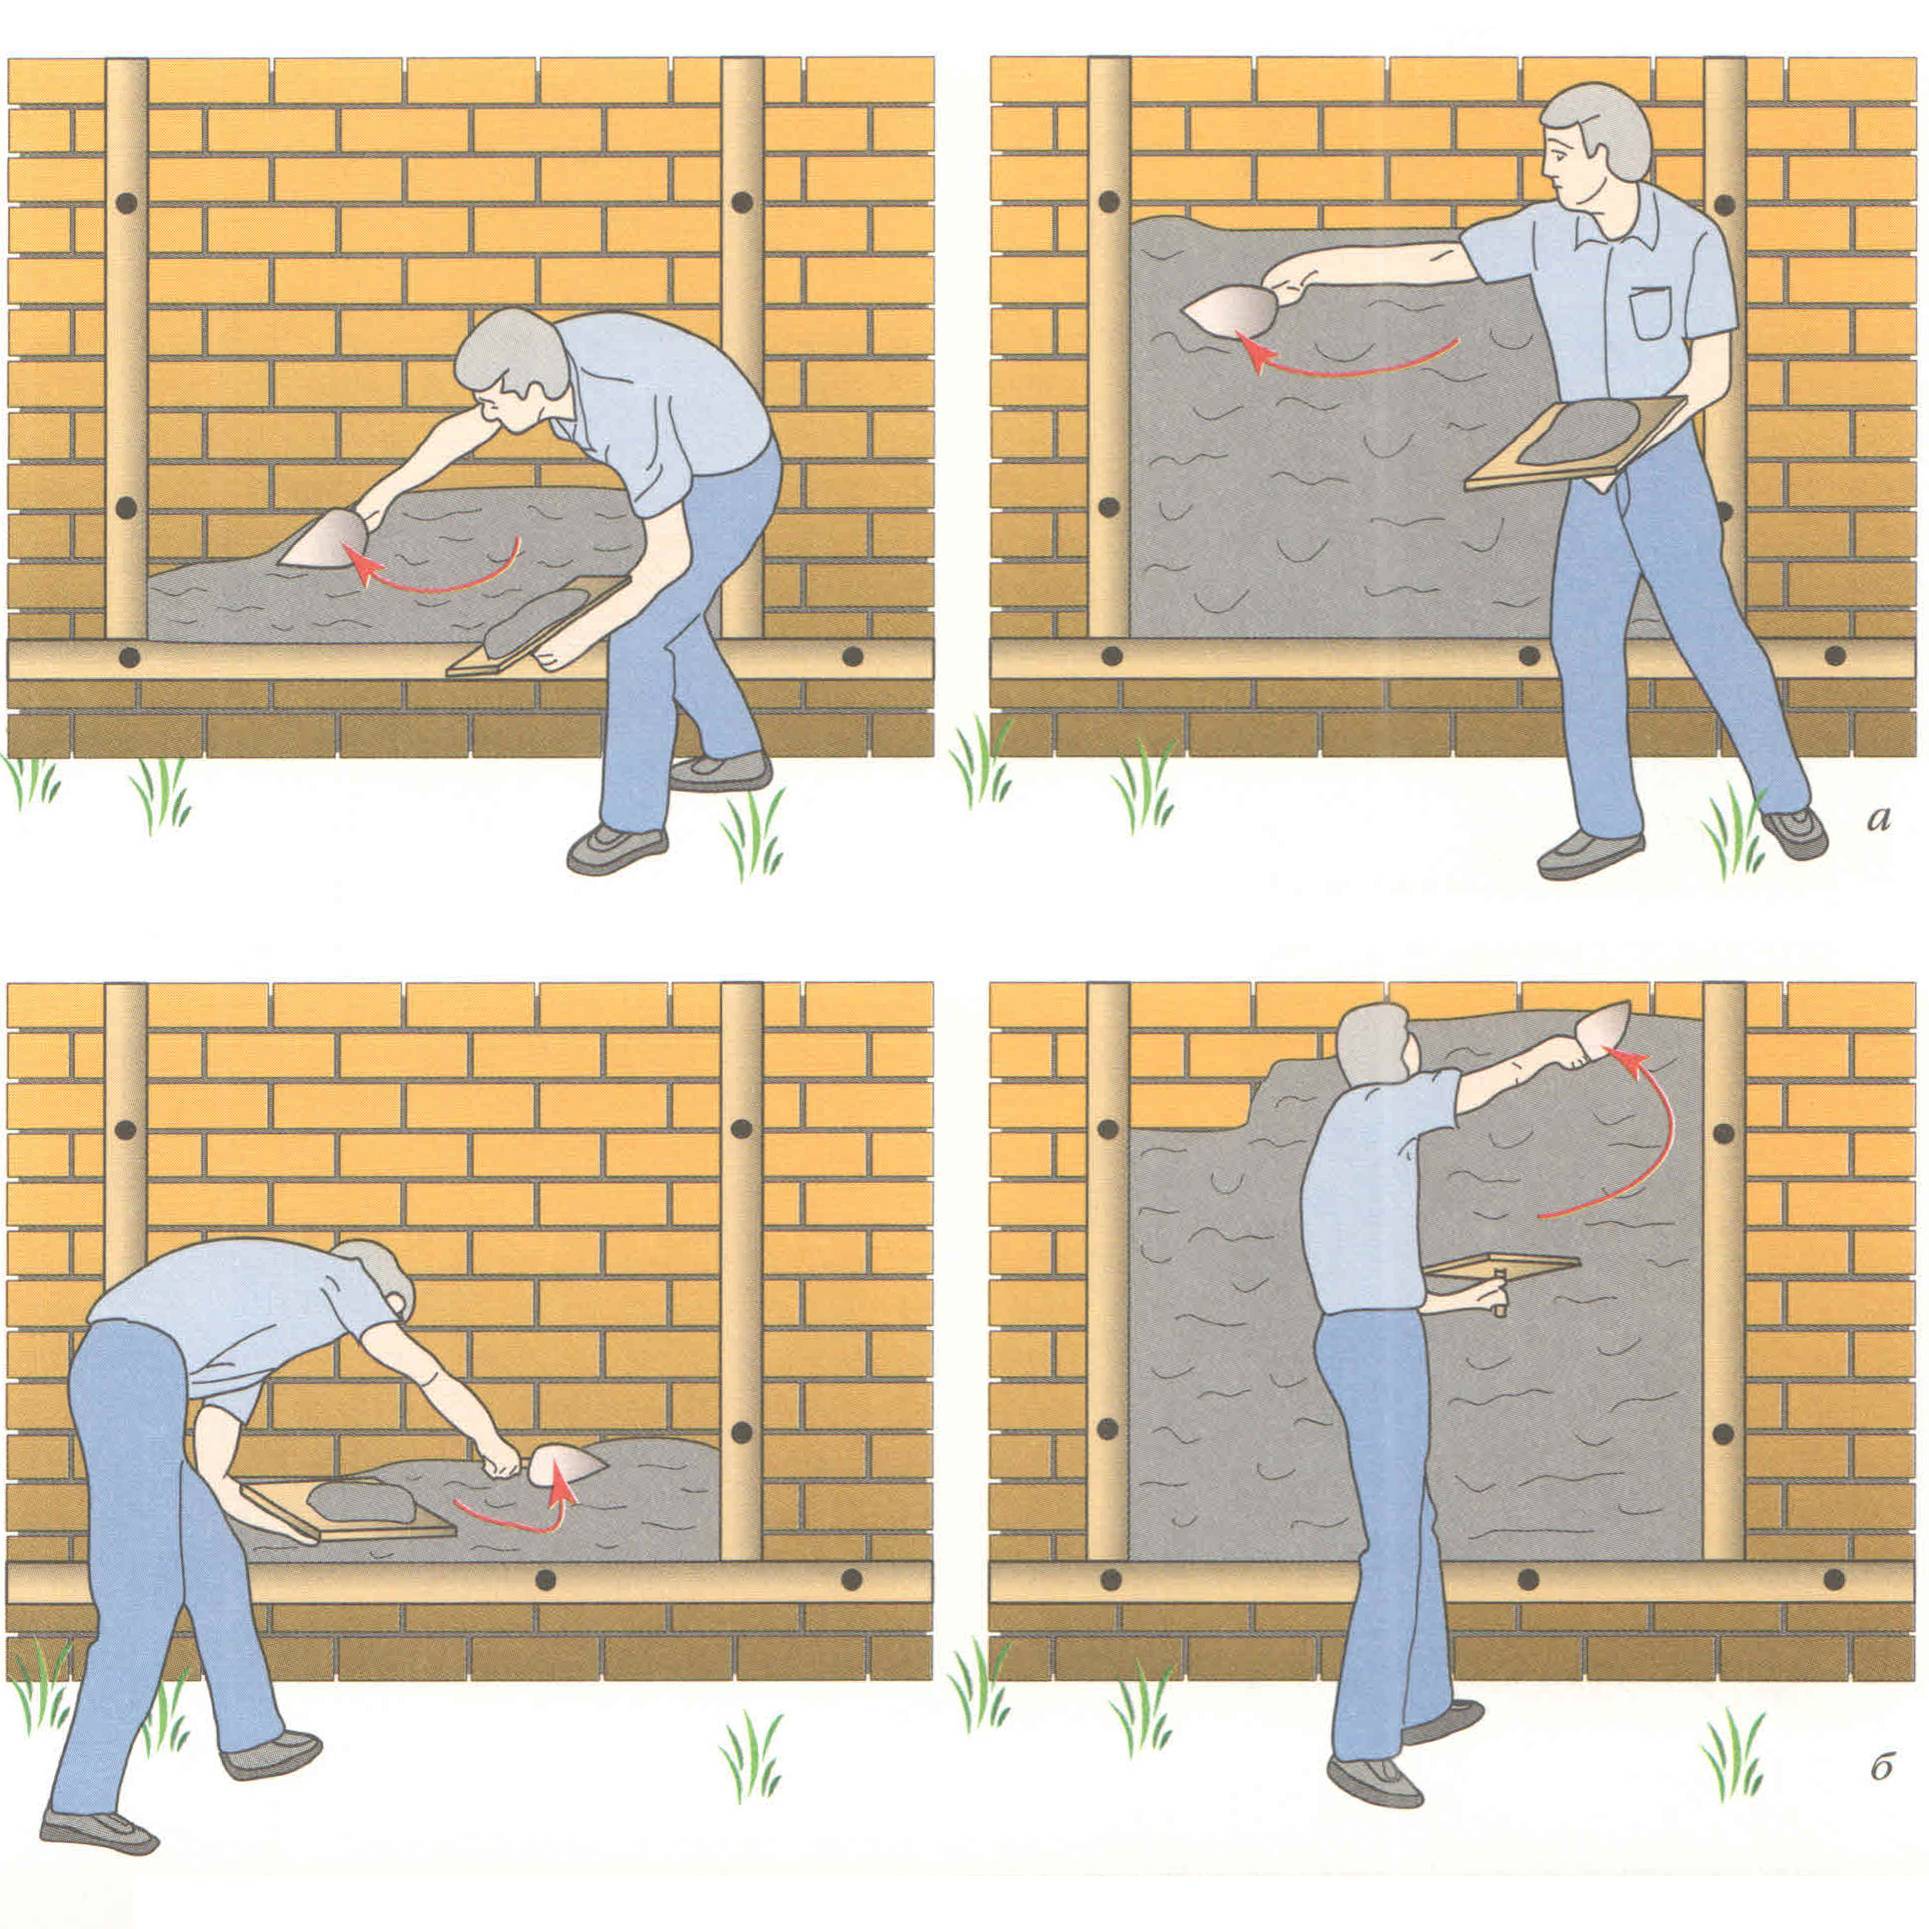 Выравнивание стен своими руками: инструкция по ремонту и выравниванию стен (115 фото)